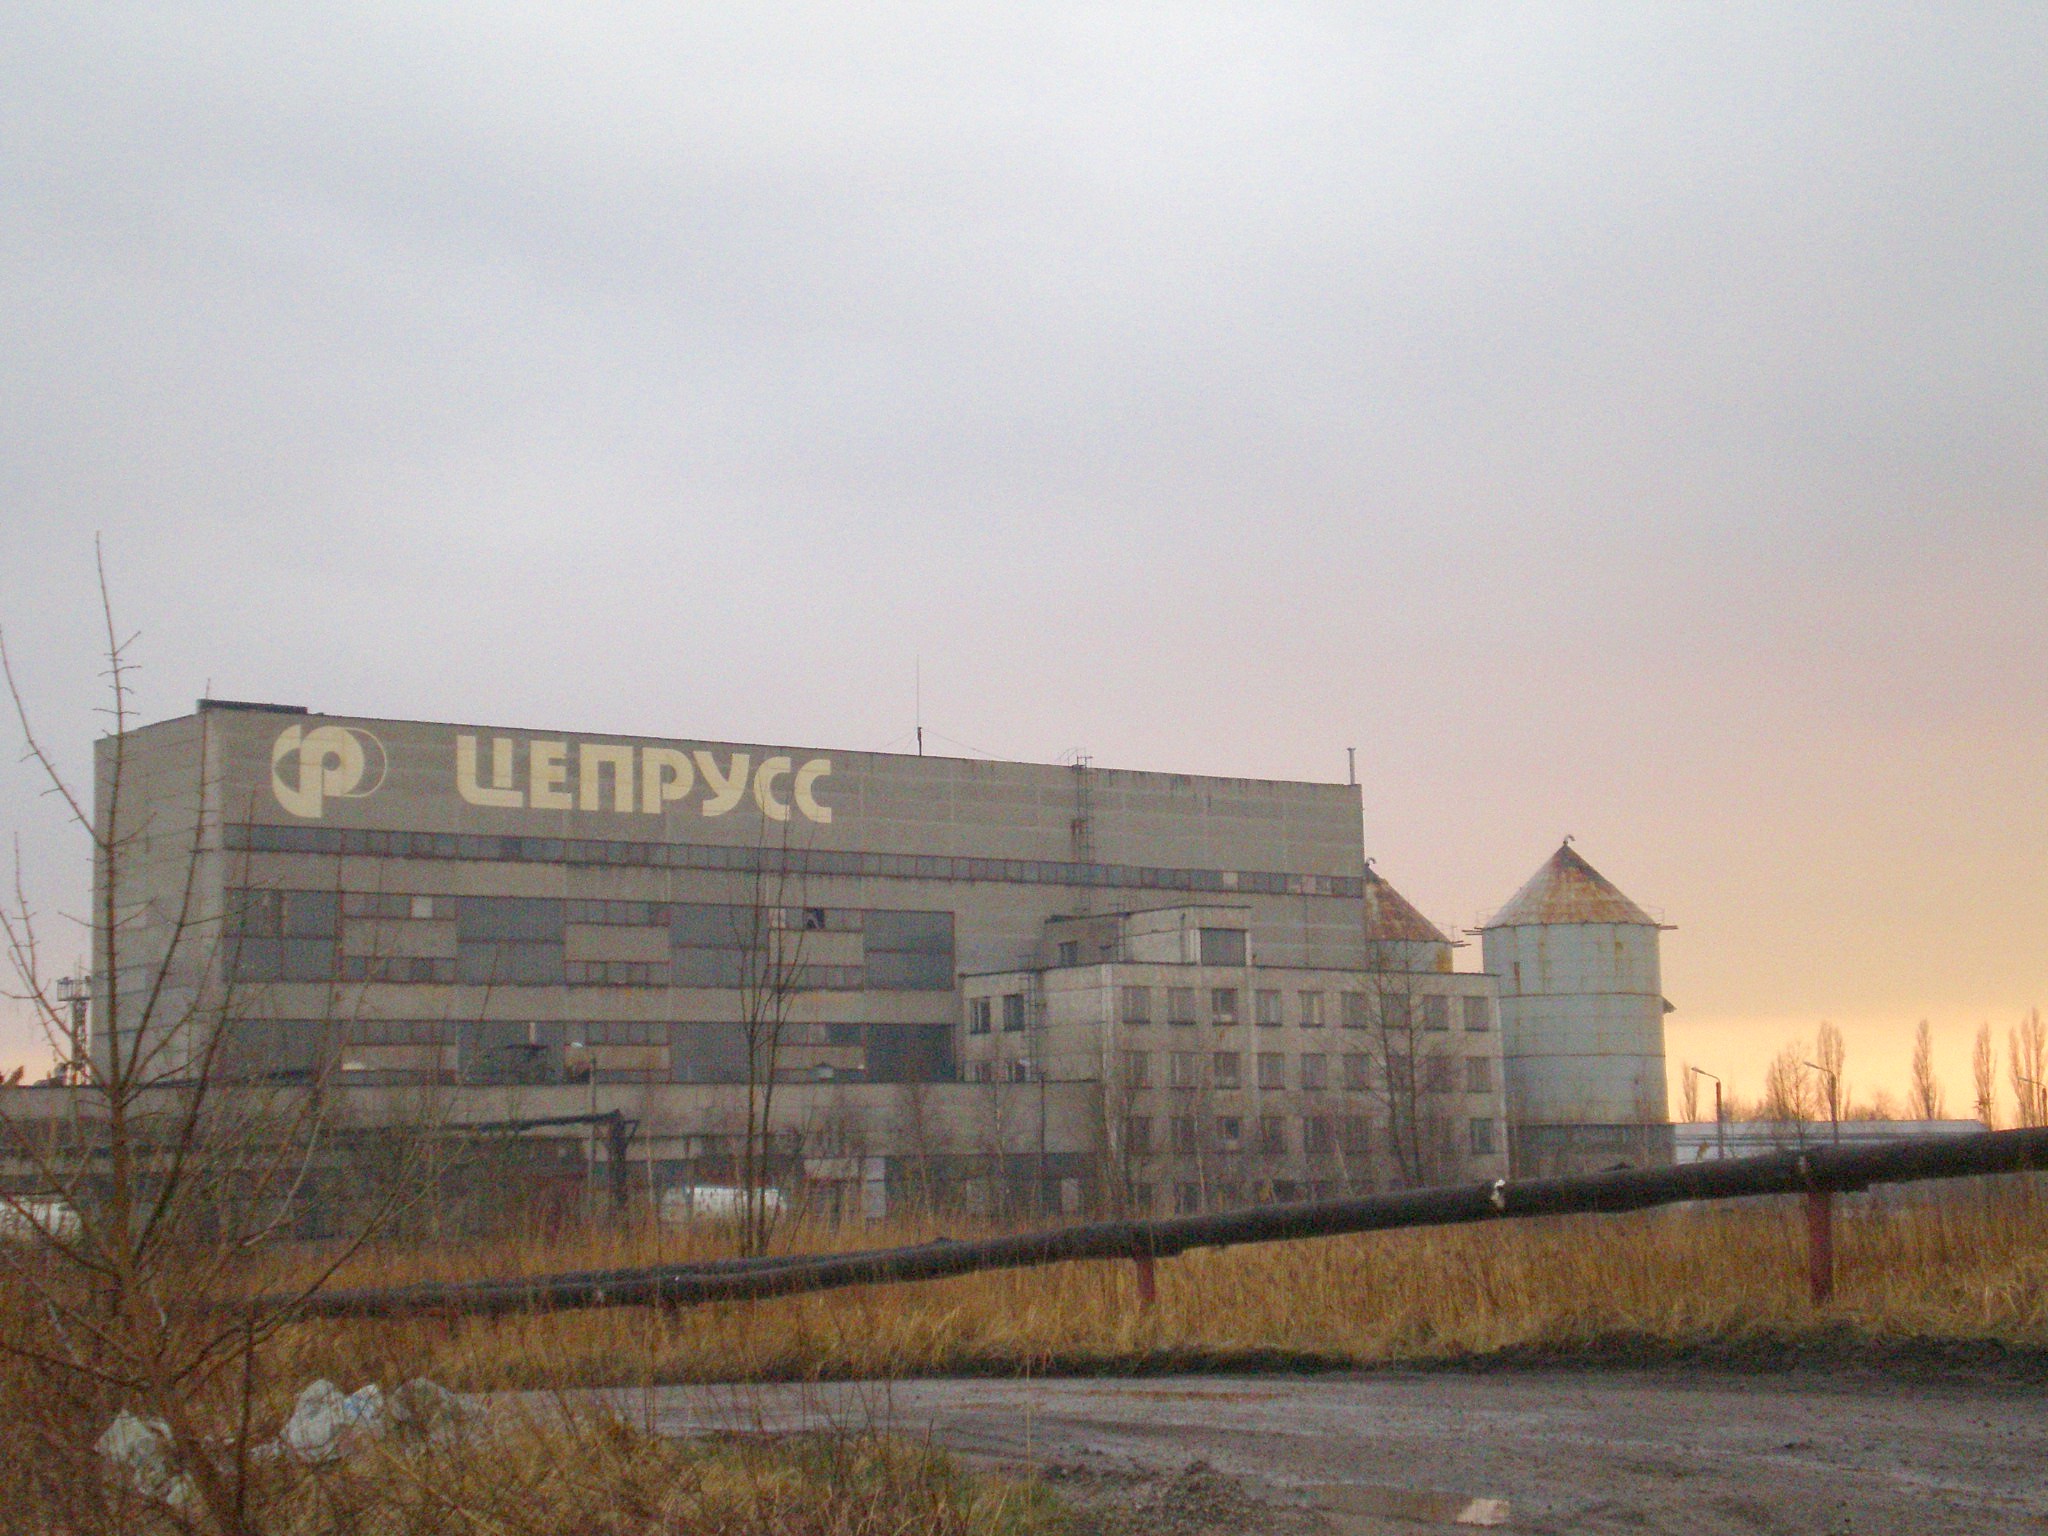 Узкоколейная железная дорога Калининградского целлюлозно-бумажного комбината  — фотографии, сделанные в 2008 году